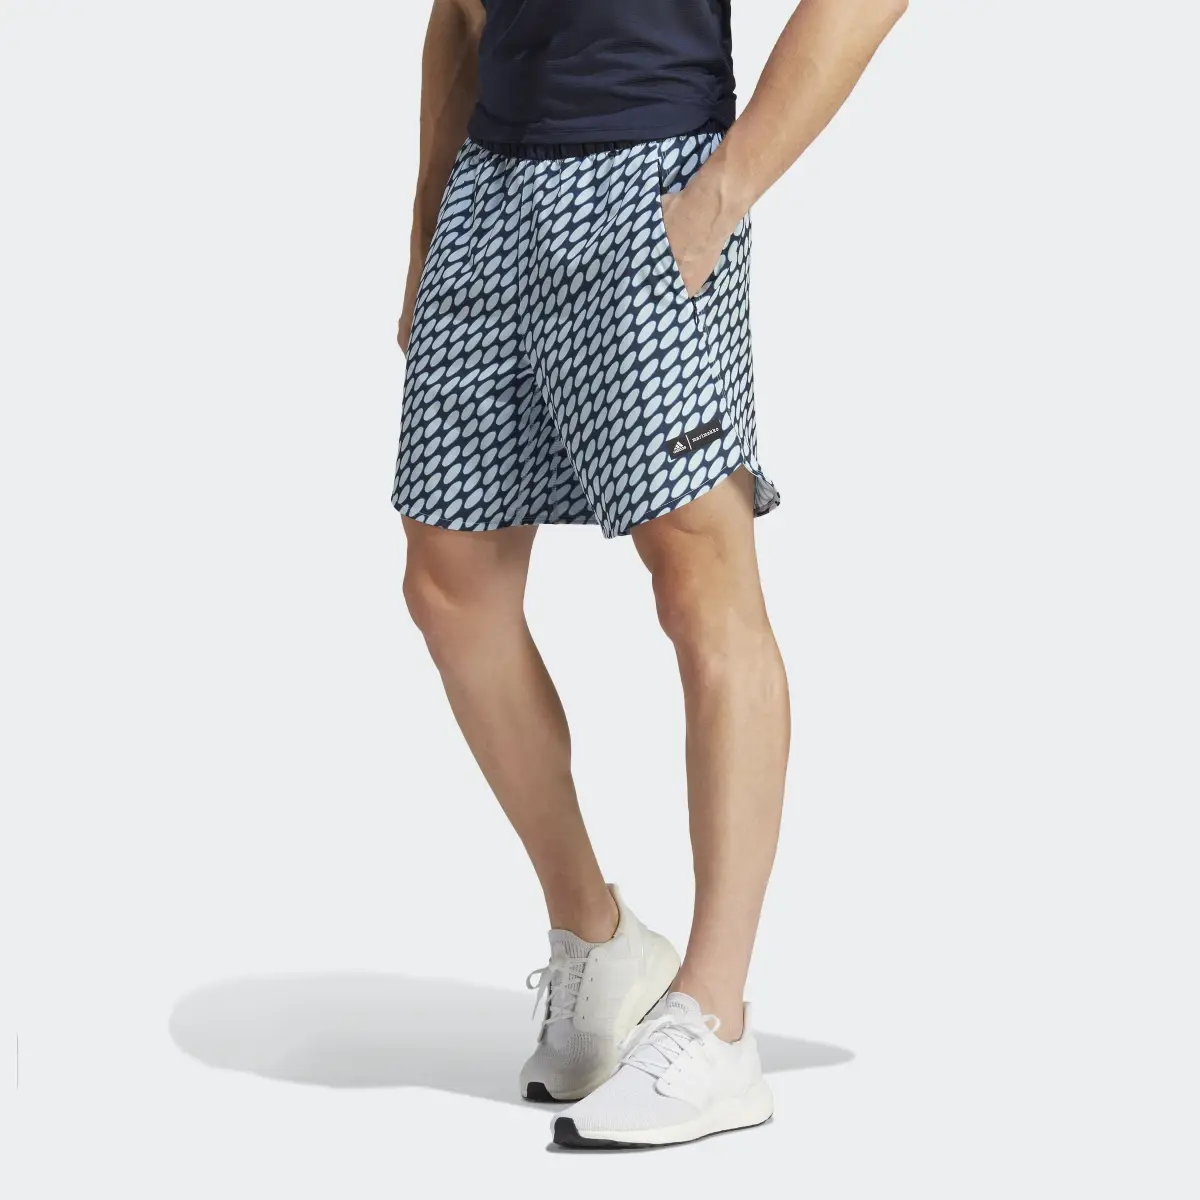 Adidas Shorts Designed for Training adidas x Marimekko. 1